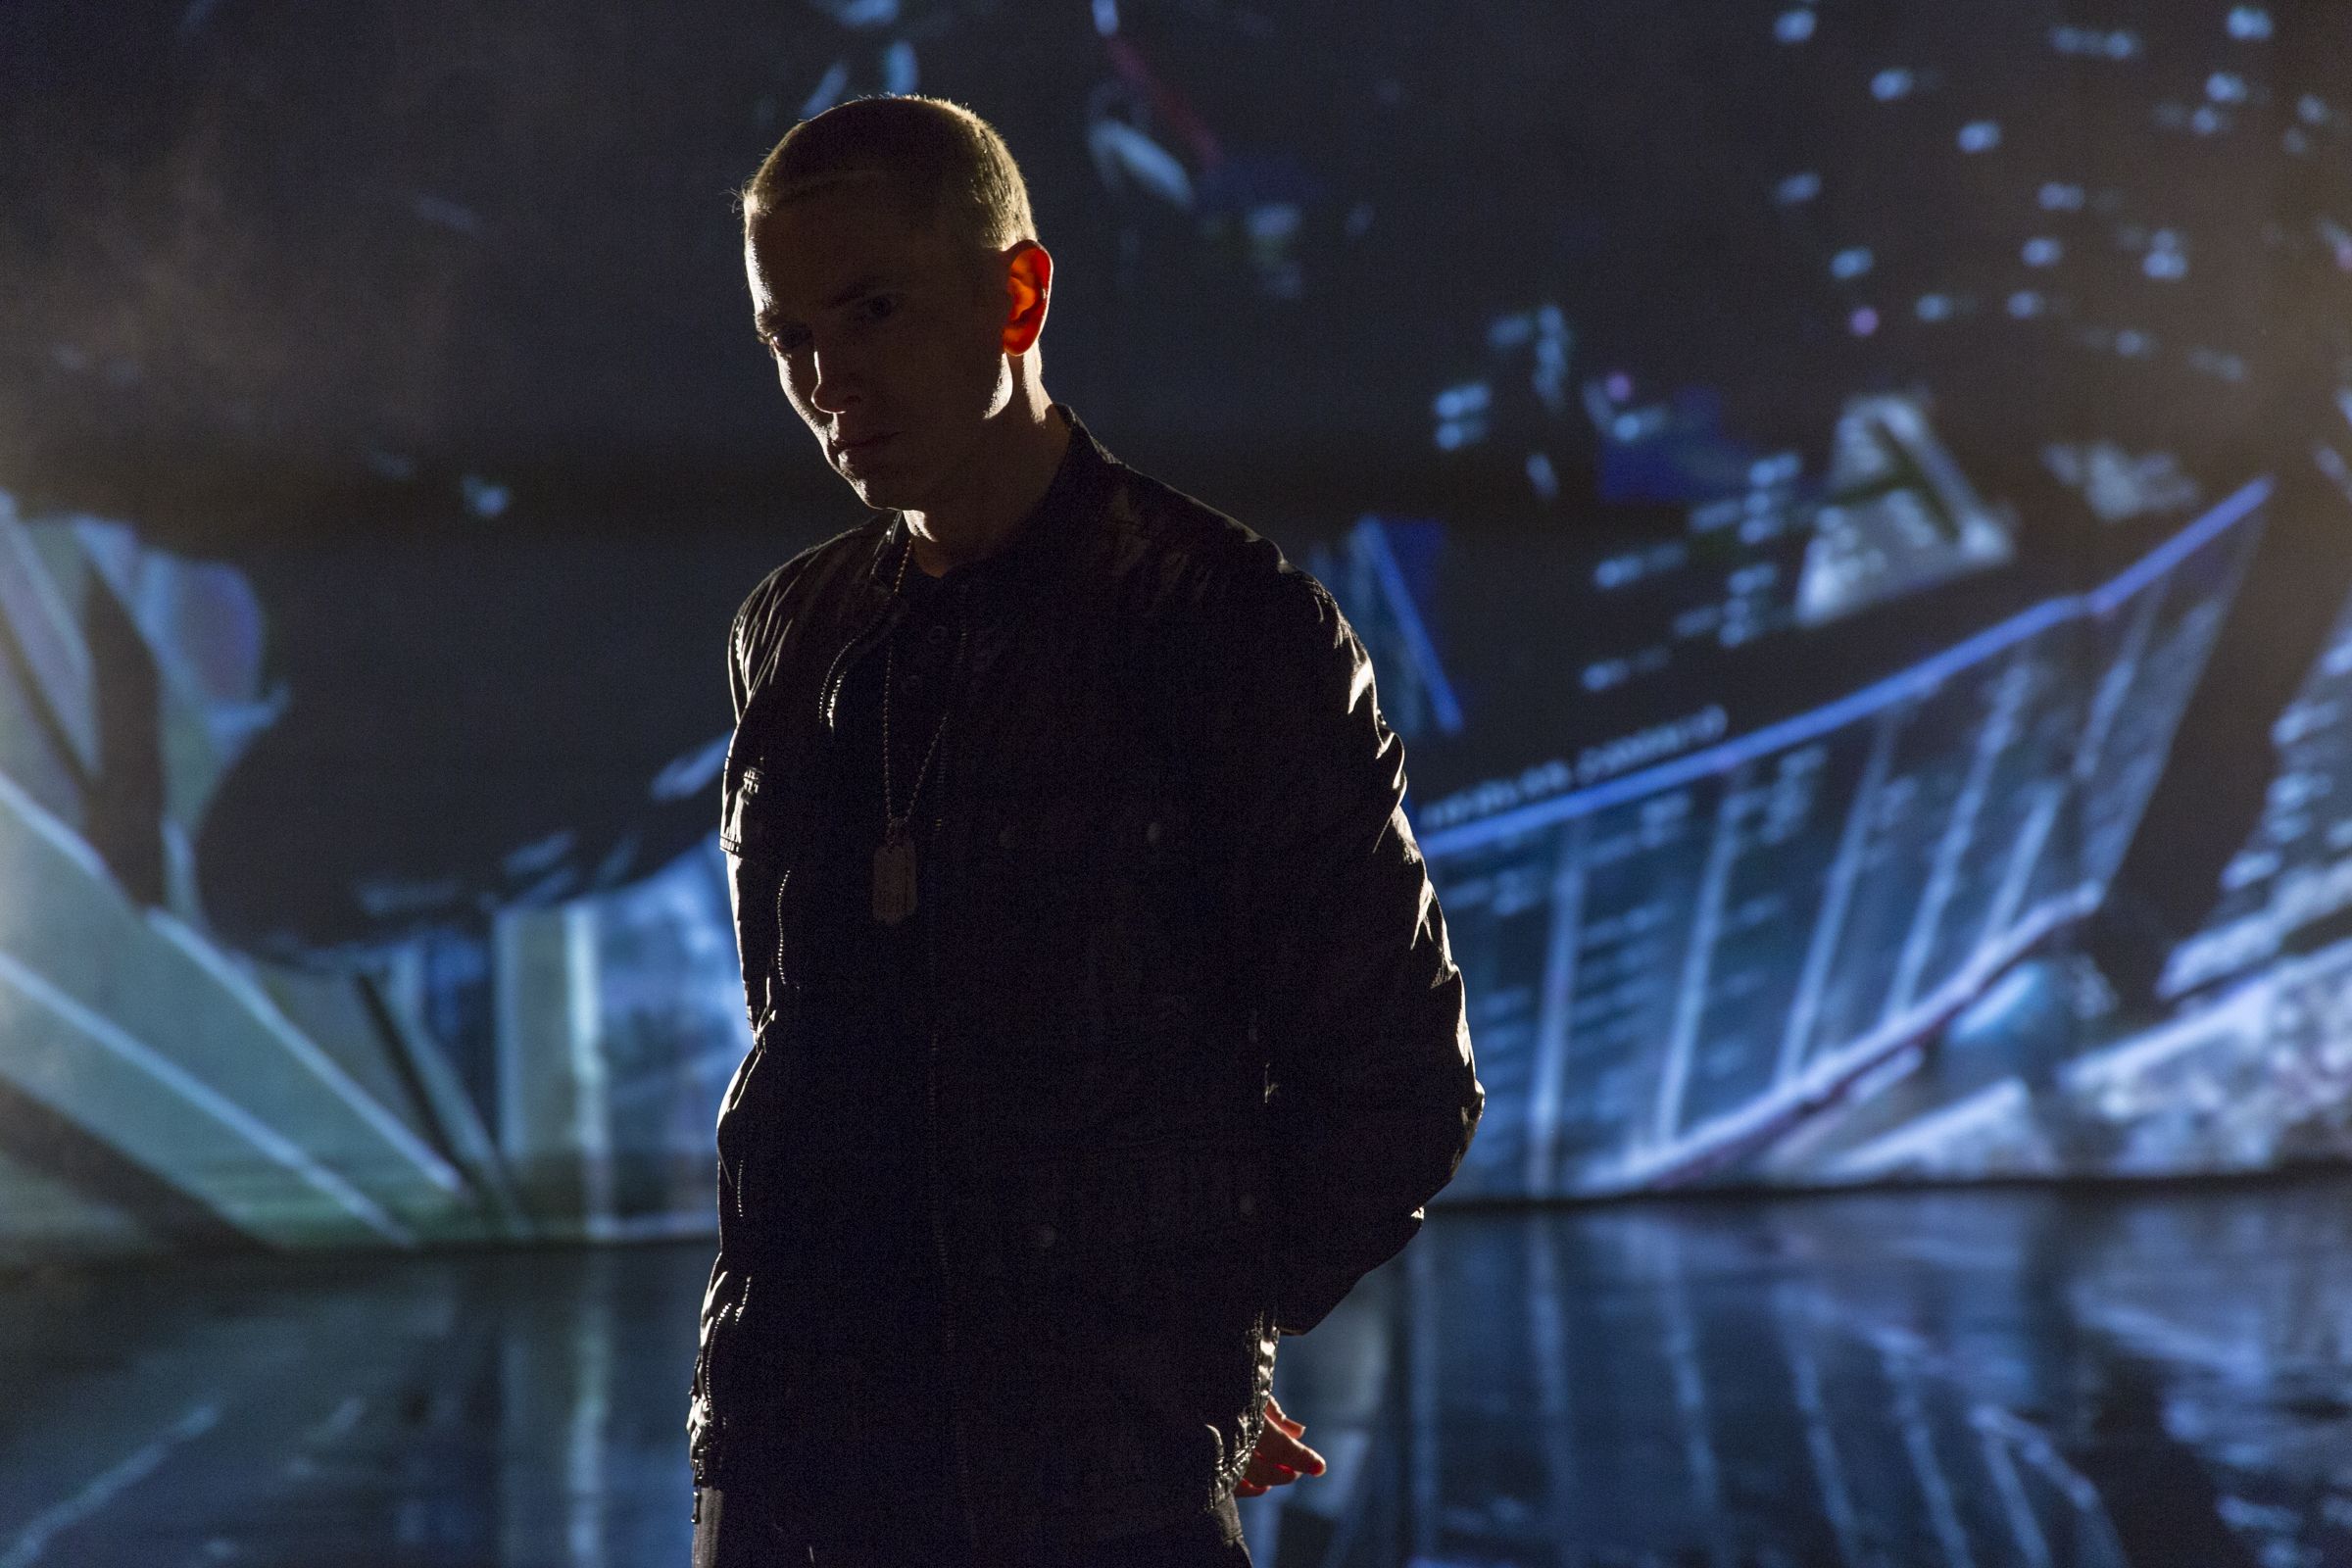 2pac Eminem Till I Die - HD Wallpaper 